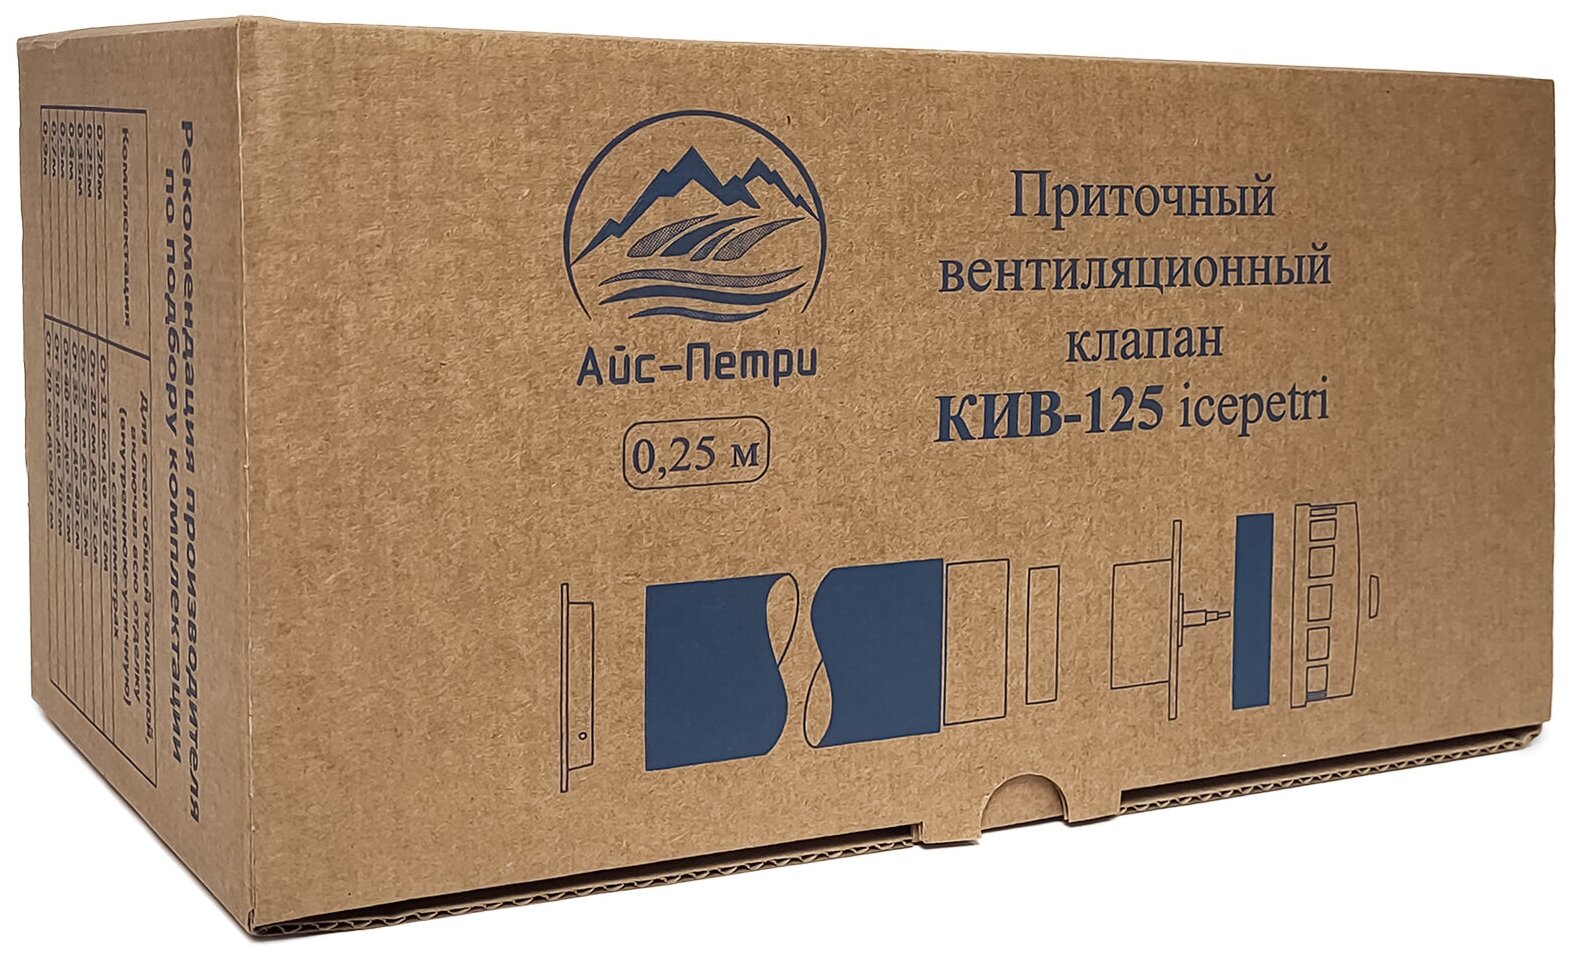 Приточный клапан КИВ-125 icepetri 250мм с к. базальтом и ivory ASA-пластиковой реш. в фирменной коробке - фотография № 4